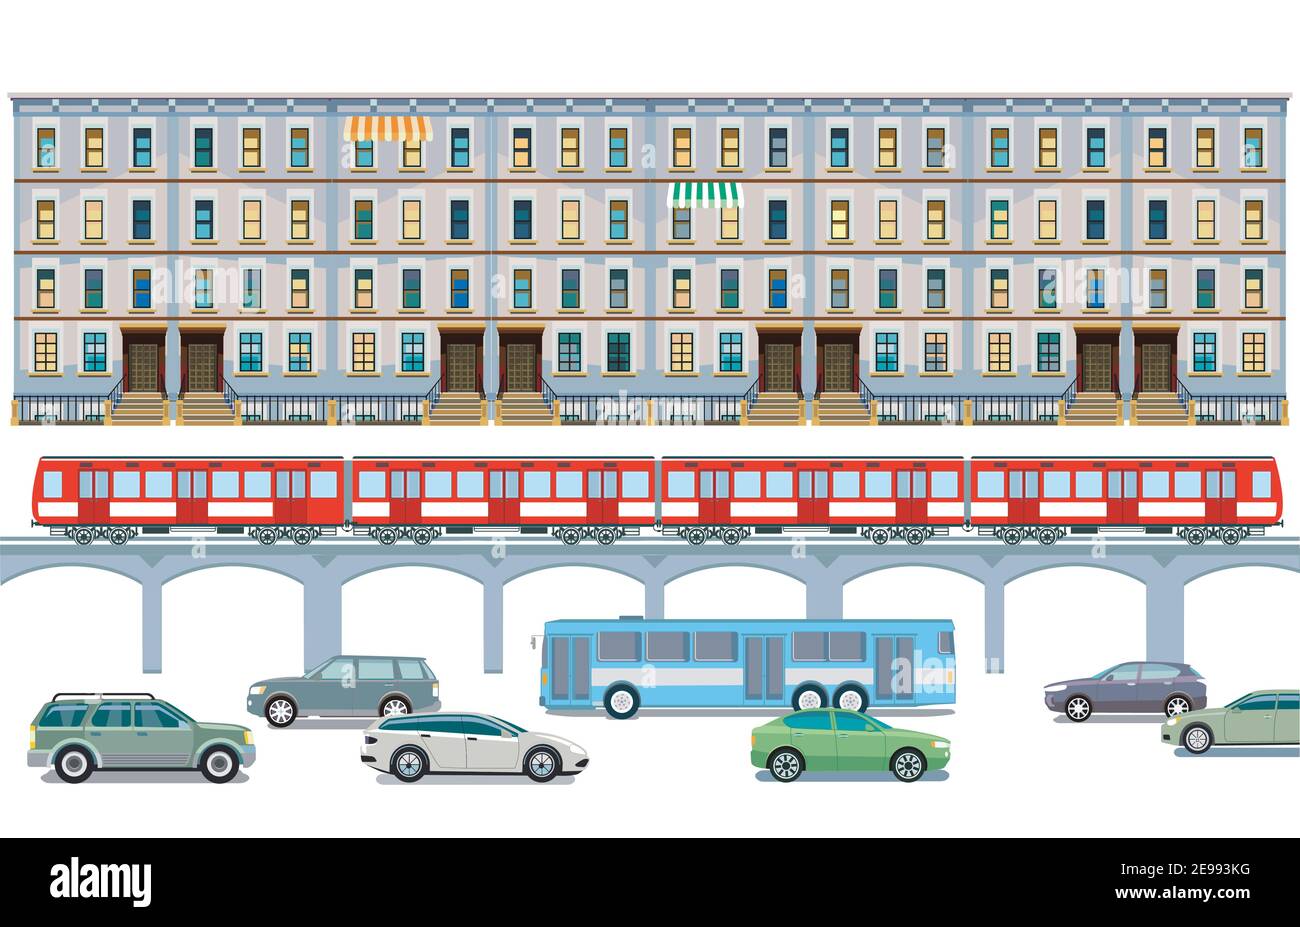 Traffico stradale con elevato treno, autobus e ciclista e illustrazione del paesaggio urbano Illustrazione Vettoriale